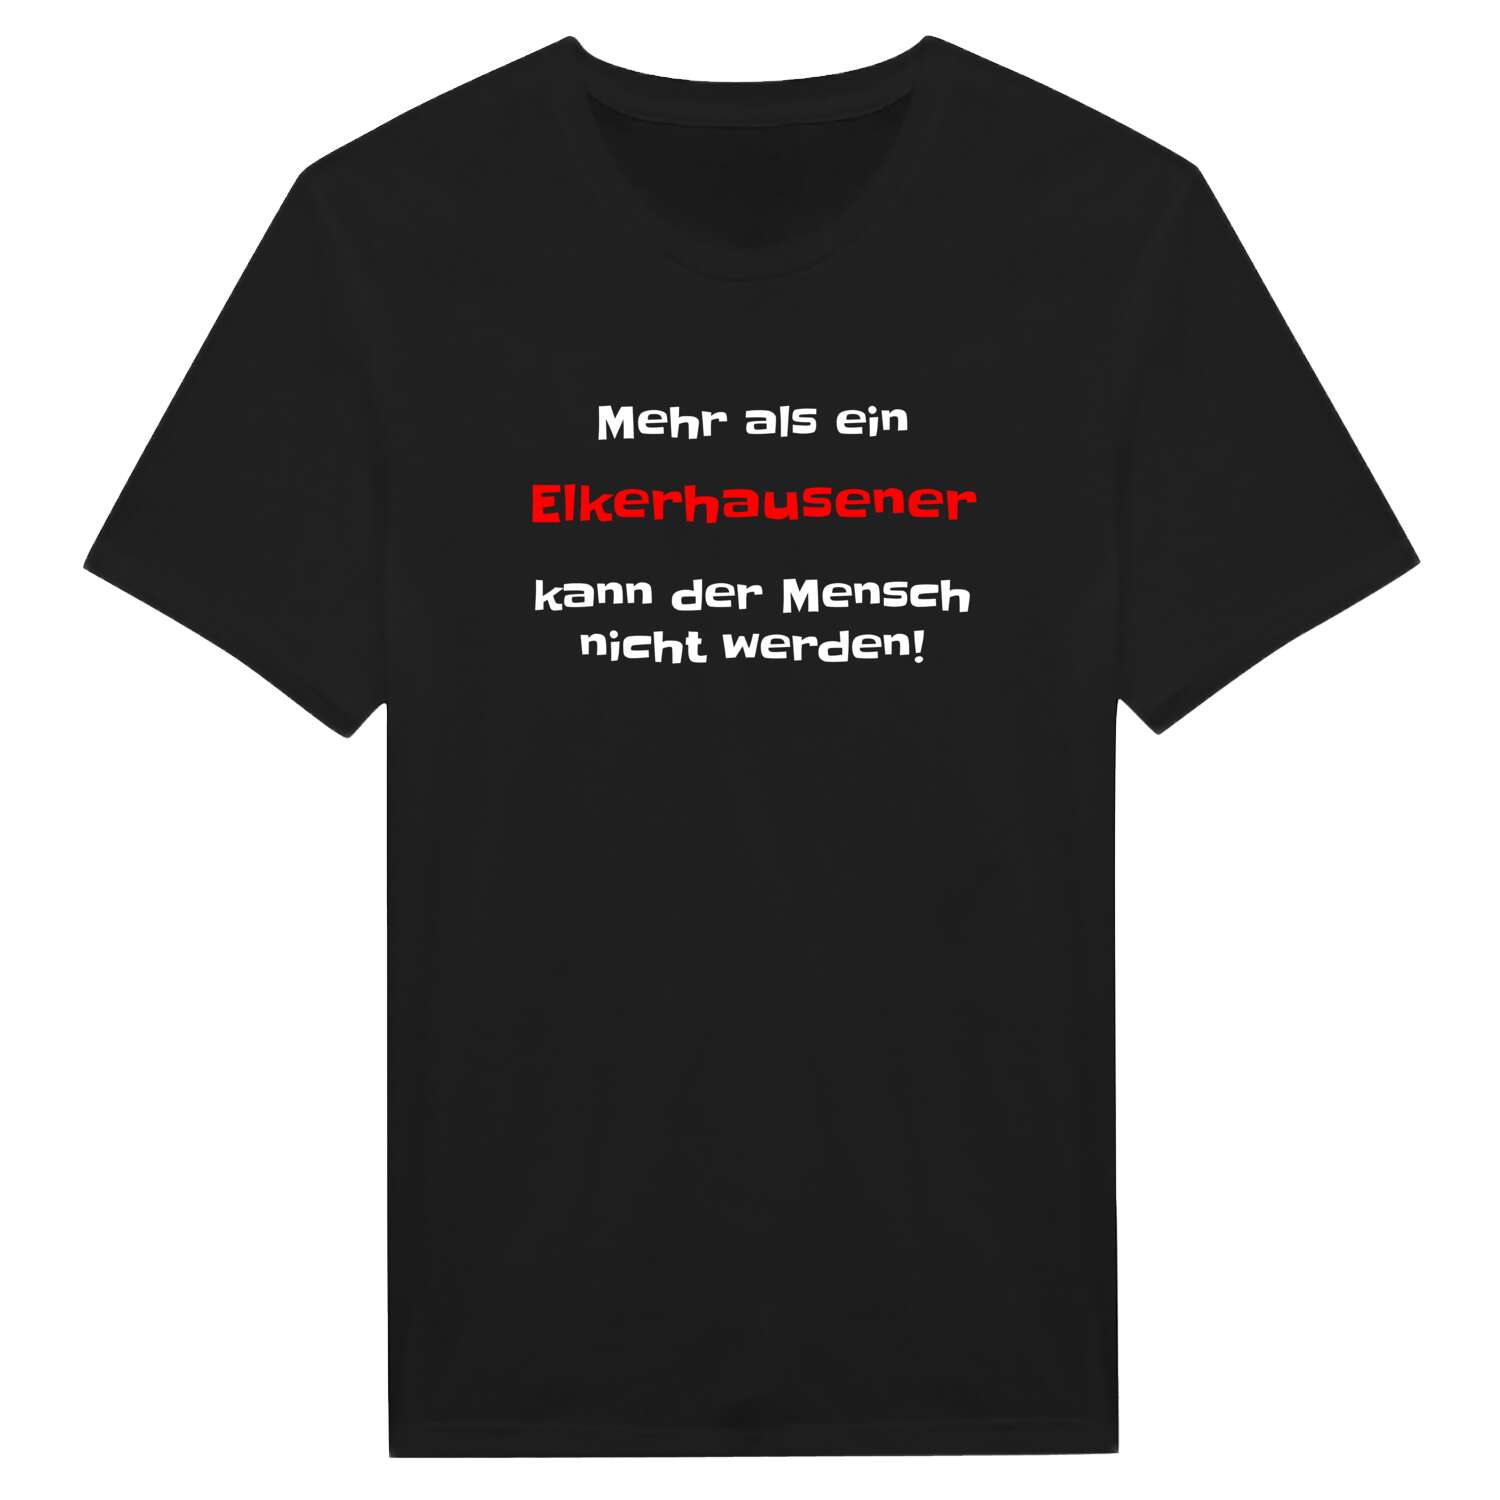 Elkerhausen T-Shirt »Mehr als ein«